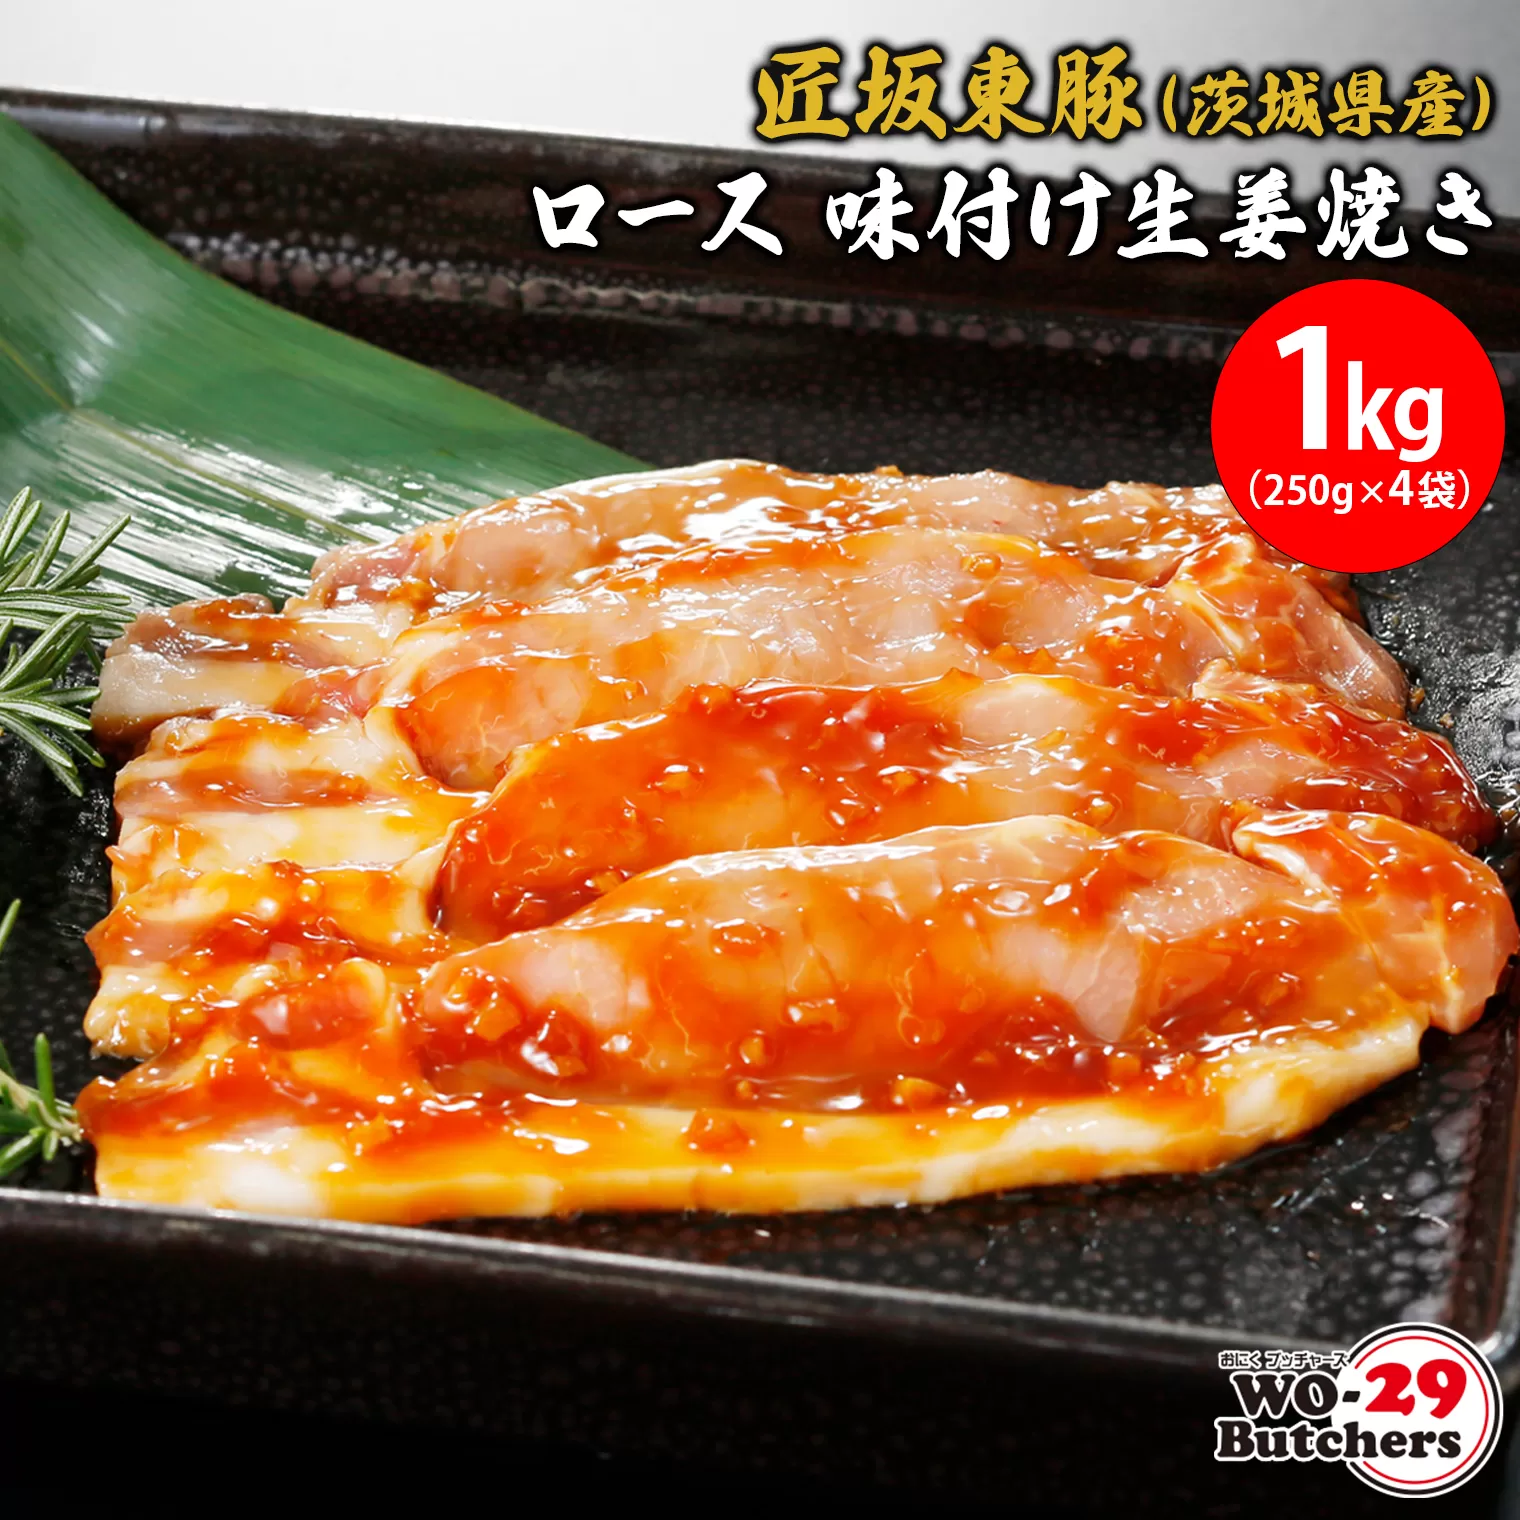 匠坂東豚(茨城県産)ロース 味付け生姜焼き 1kg(250g×4袋)